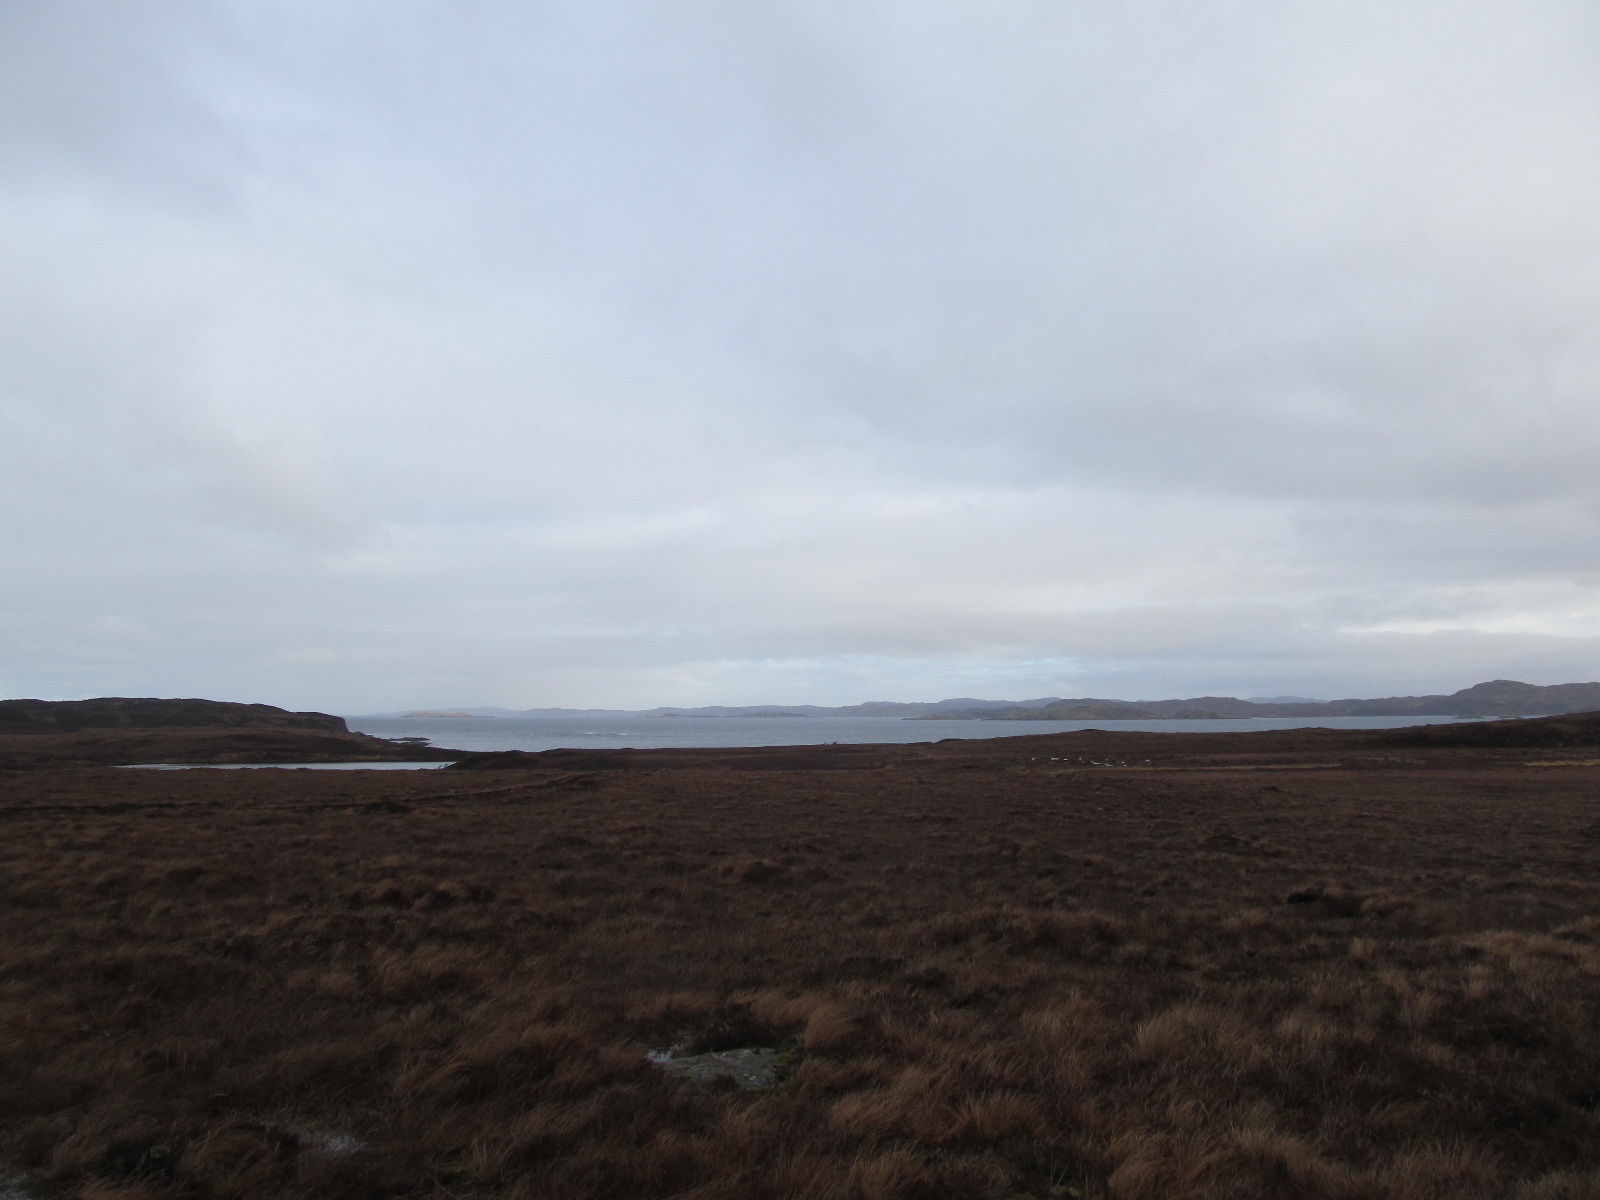 Achnahaird heathland with view on the Loch Garvie Bay